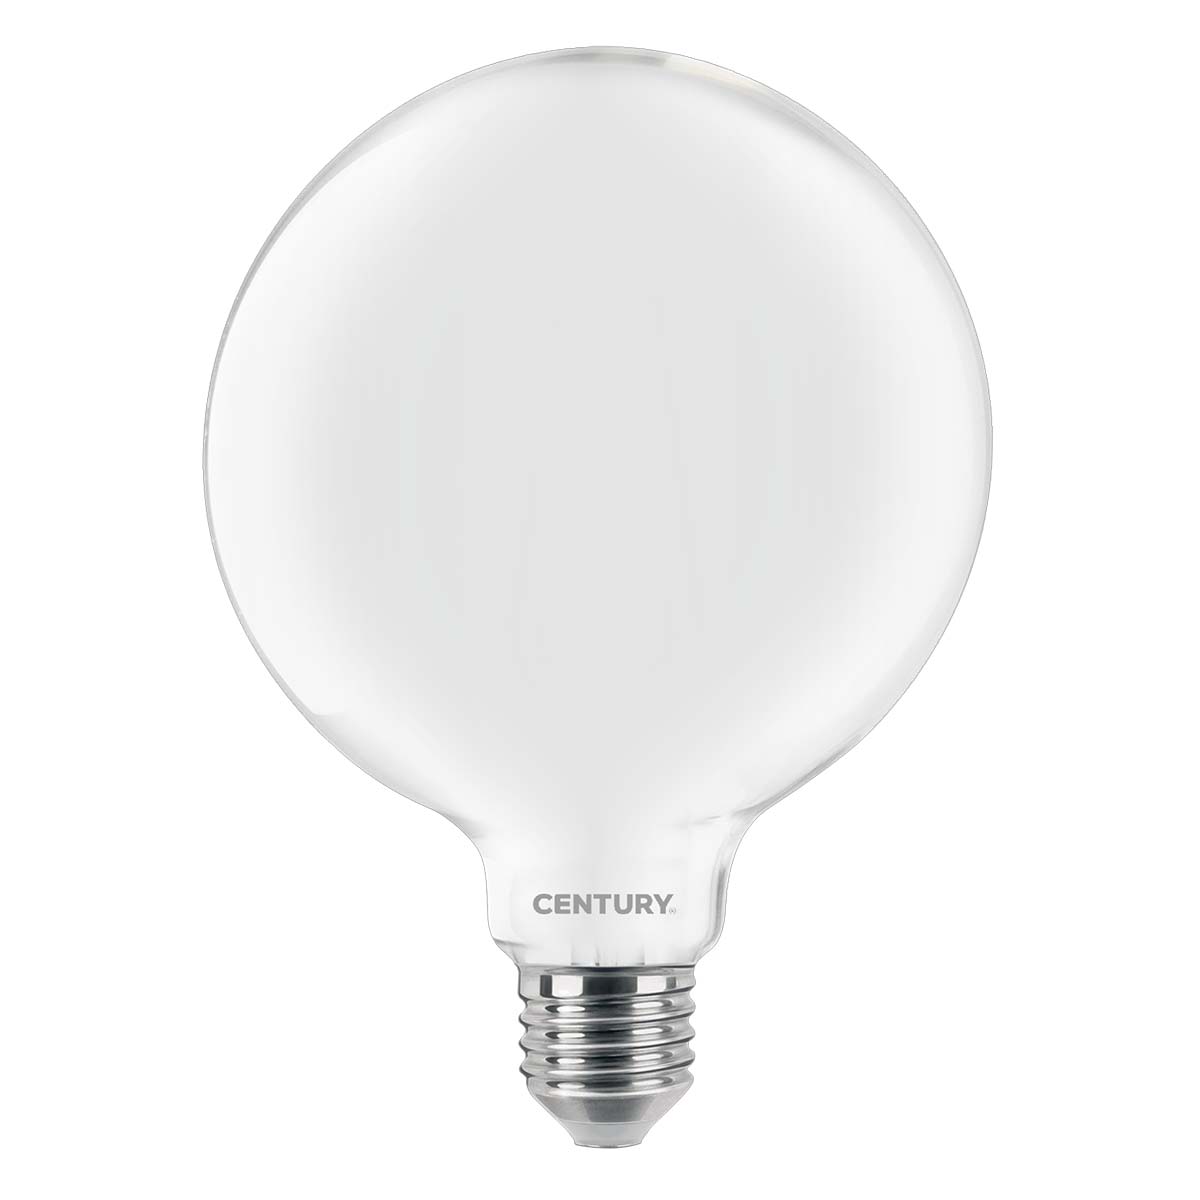 11 Watt LED Leuchtmittel E27 Leuchte 1055lm Beleuchtung warm weiß Lampe EEK A+ 